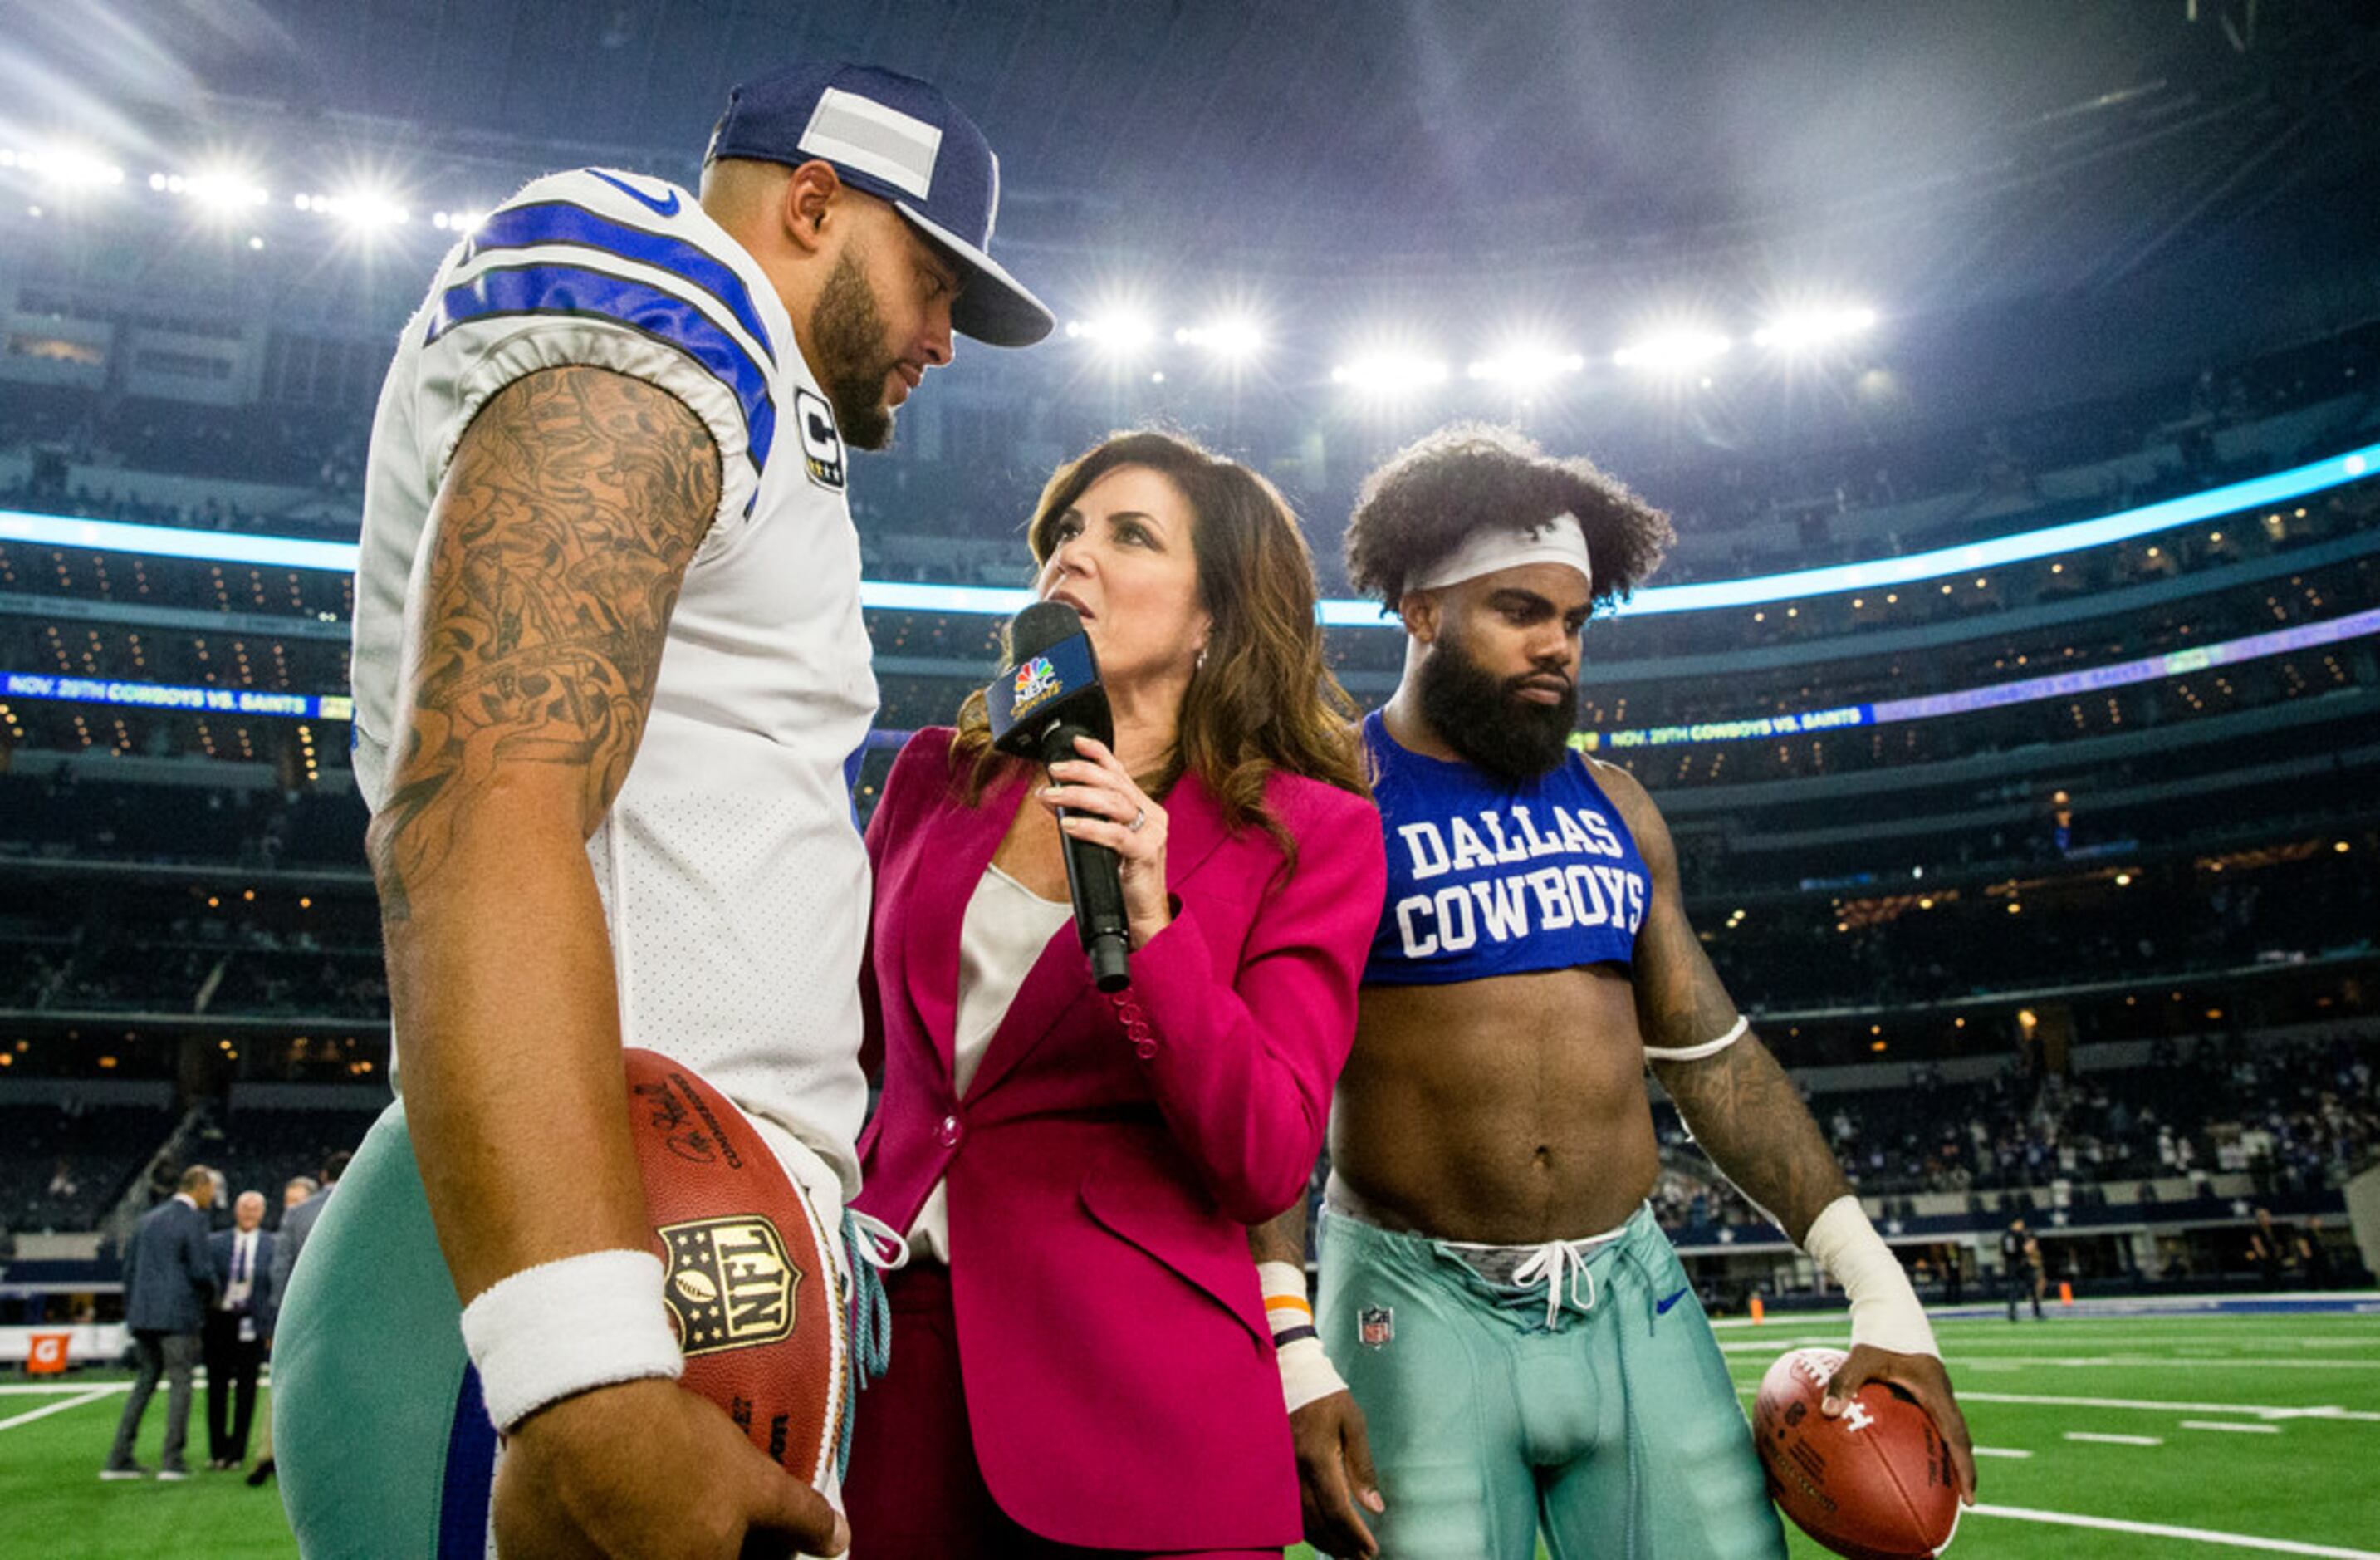 Oakland Raiders vs. Dallas Cowboys: A dream Super Bowl - Sports Illustrated